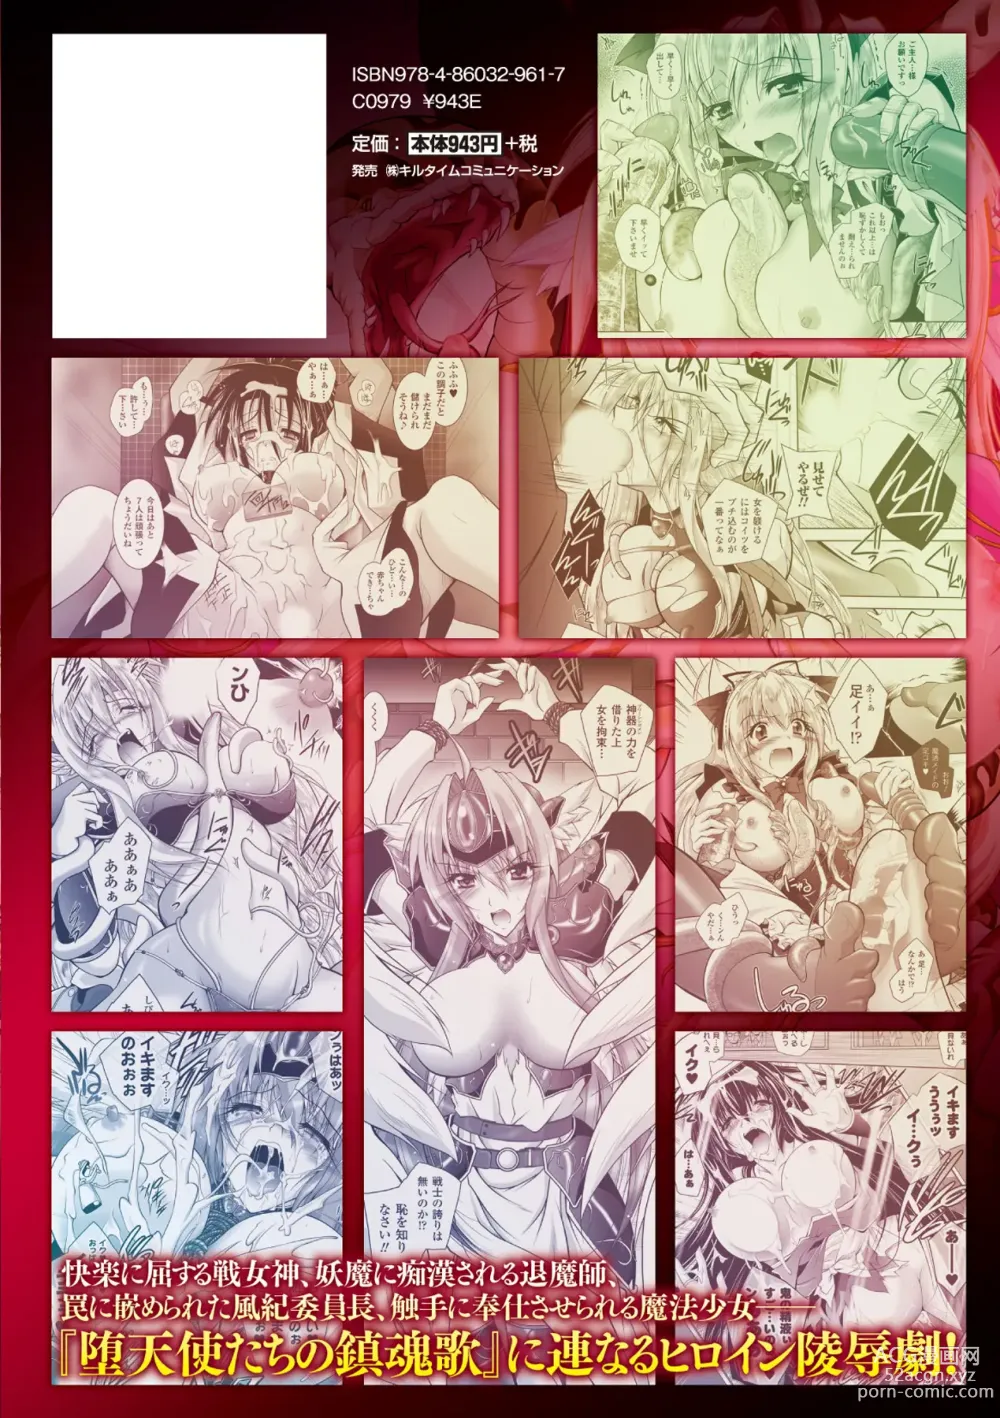 Page 182 of manga Datenshi-tachi no Rhapsody - Fallen Angels Rhapsody